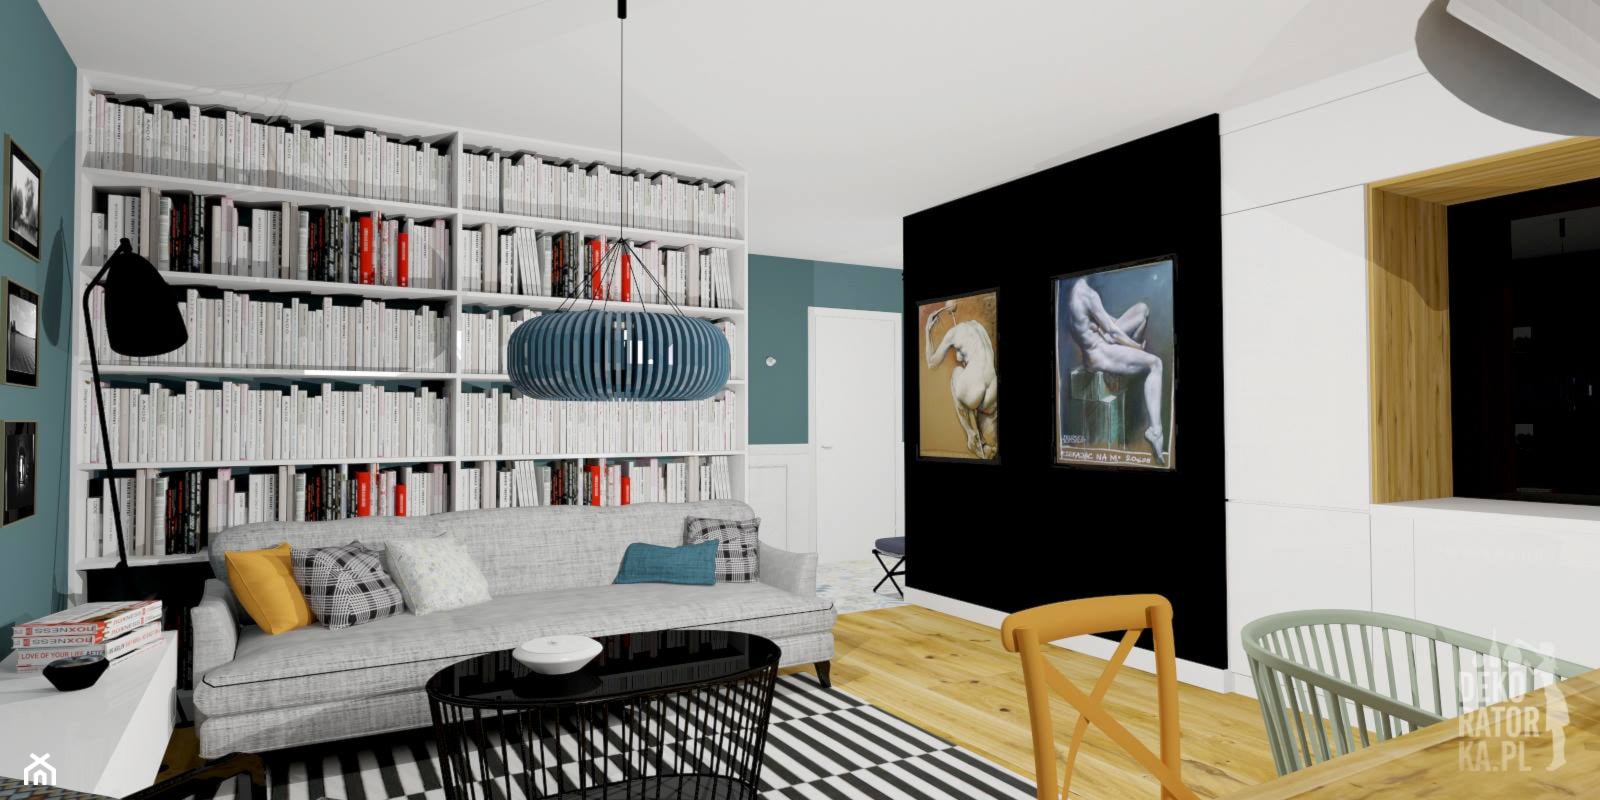 POZNAŃ | Mieszkanie prywatne | Koncepcja - Salon, styl nowoczesny - zdjęcie od dekoratorka.pl - Homebook